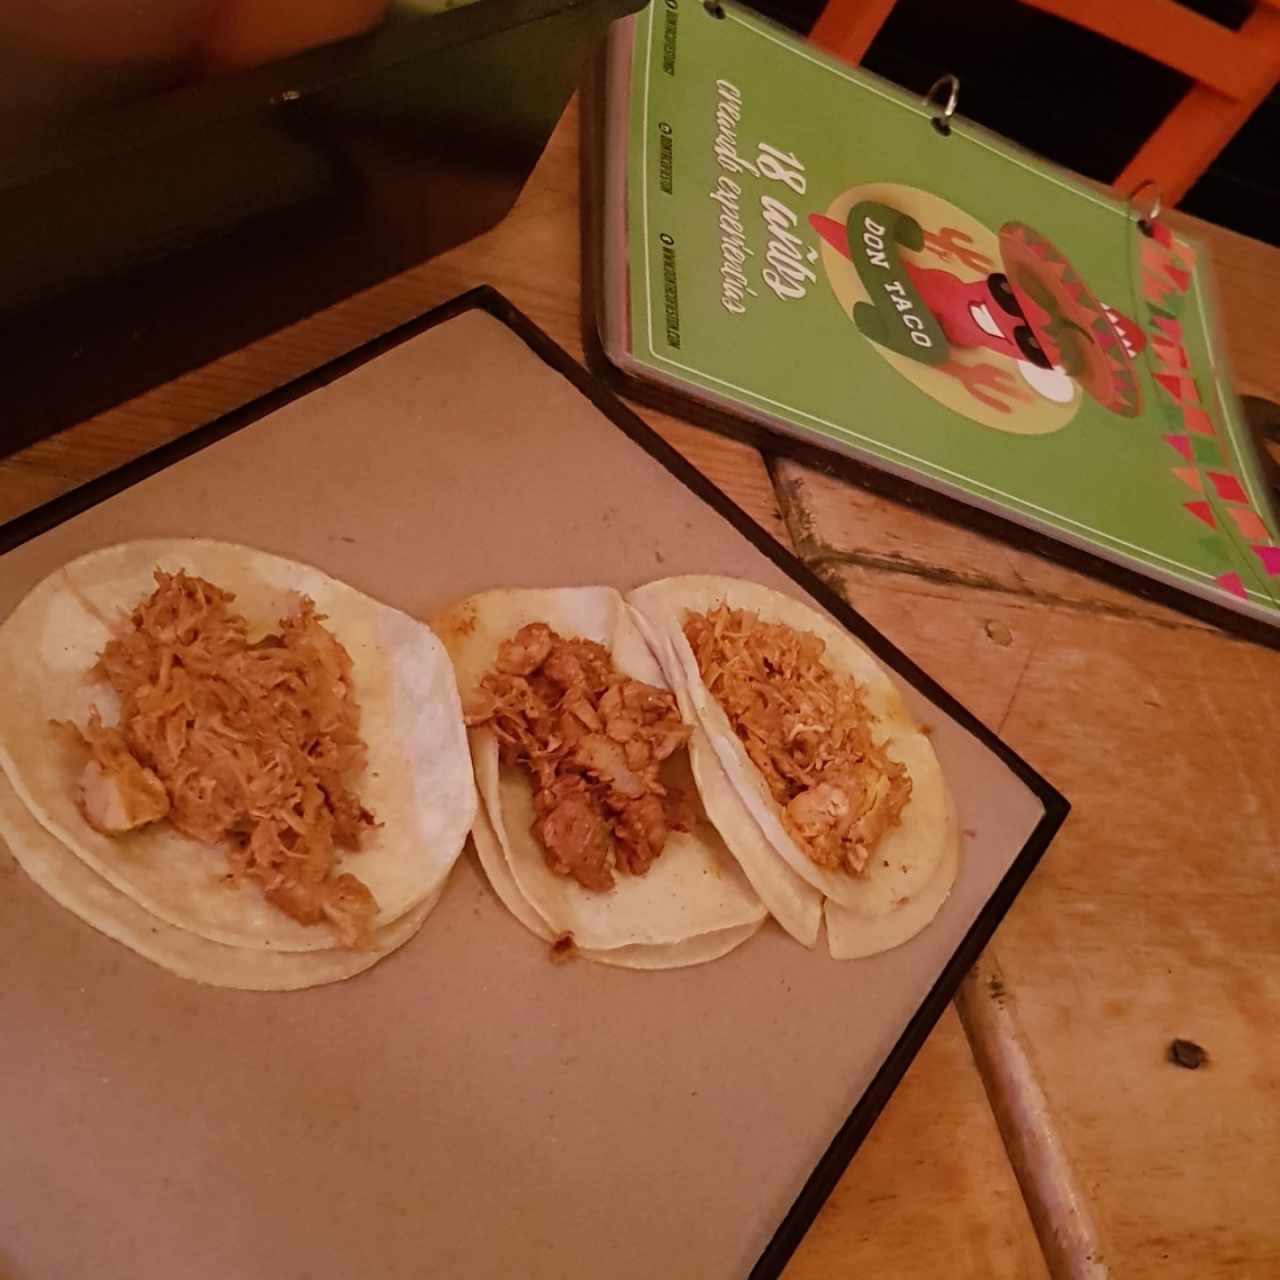 Tacos de cochinita Pibil